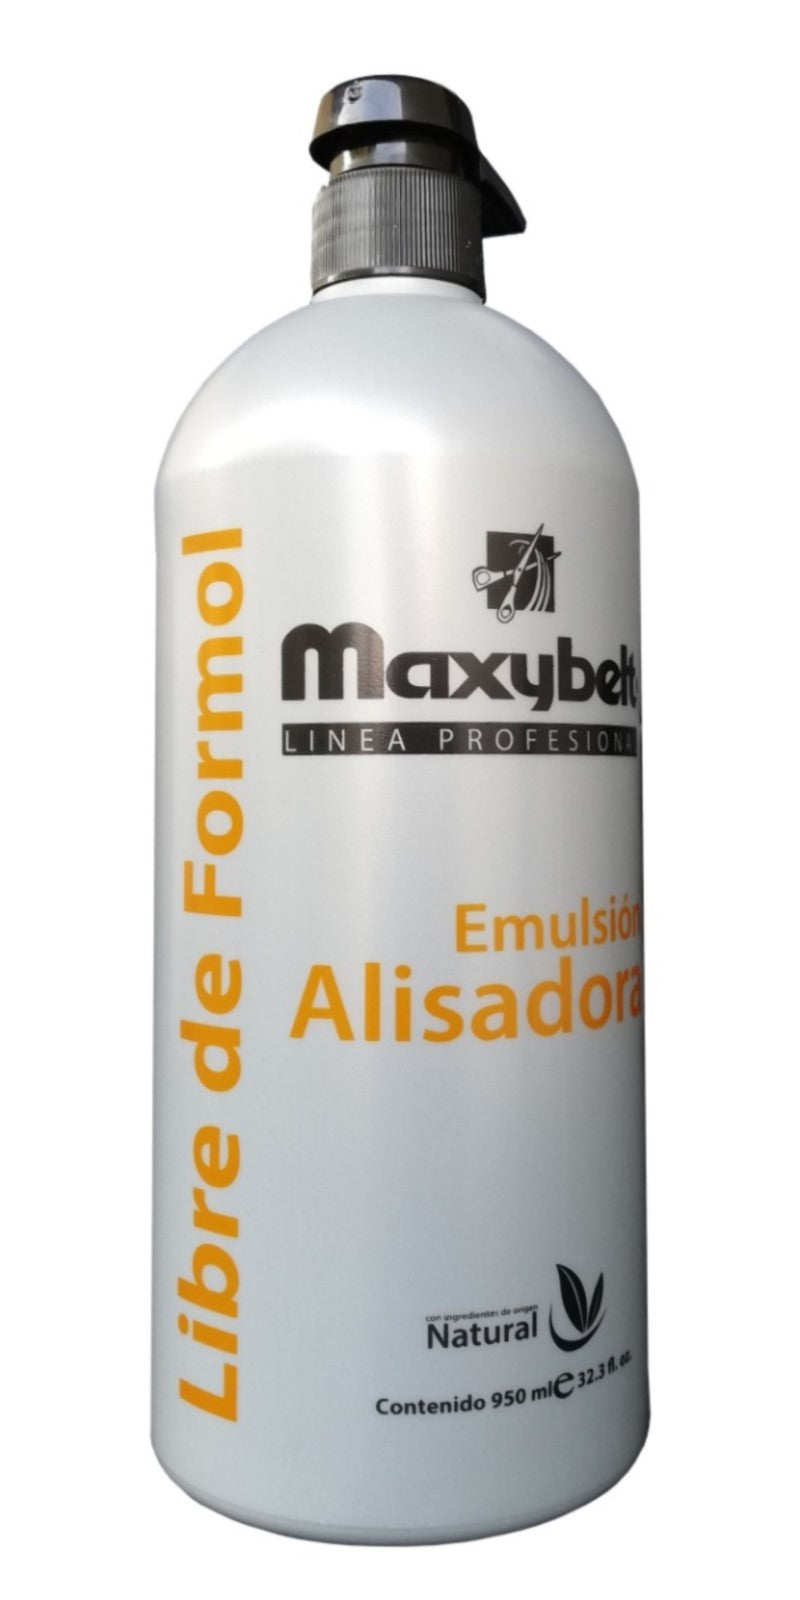 Keratina Maxybelt Emulsion Alisadora